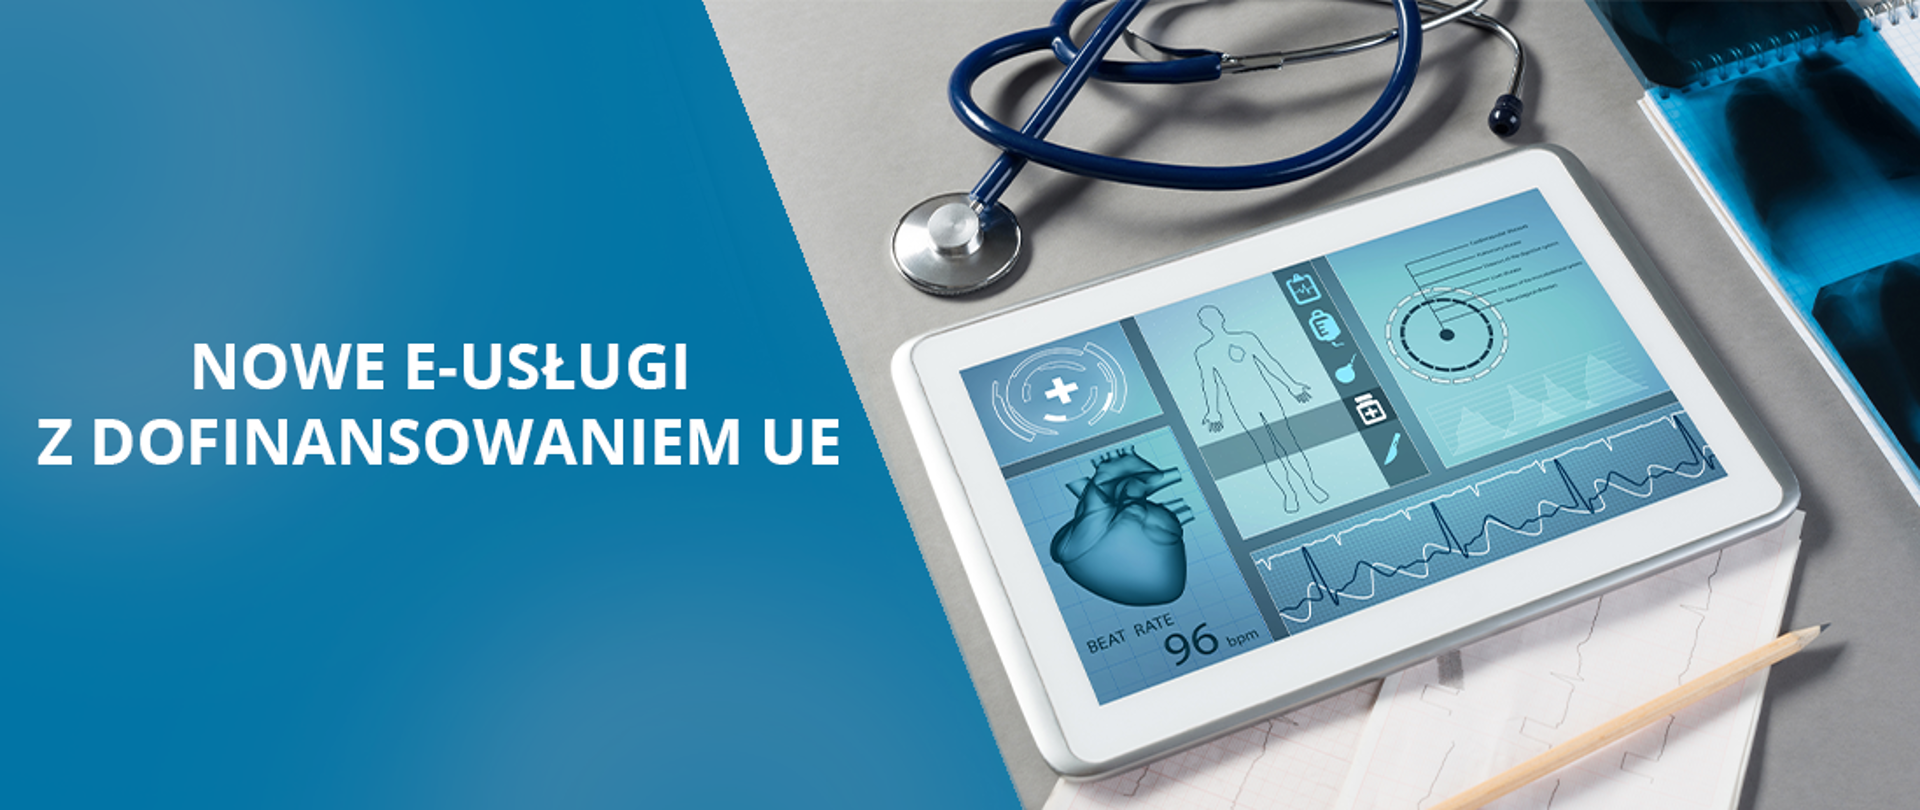 Baner pokazuje tablet. Na ekranie tabletu przykładowa dokumentacja medyczna pacjenta. Napis na banerze: "nowe e-usługi z dofinansowaniem UE"